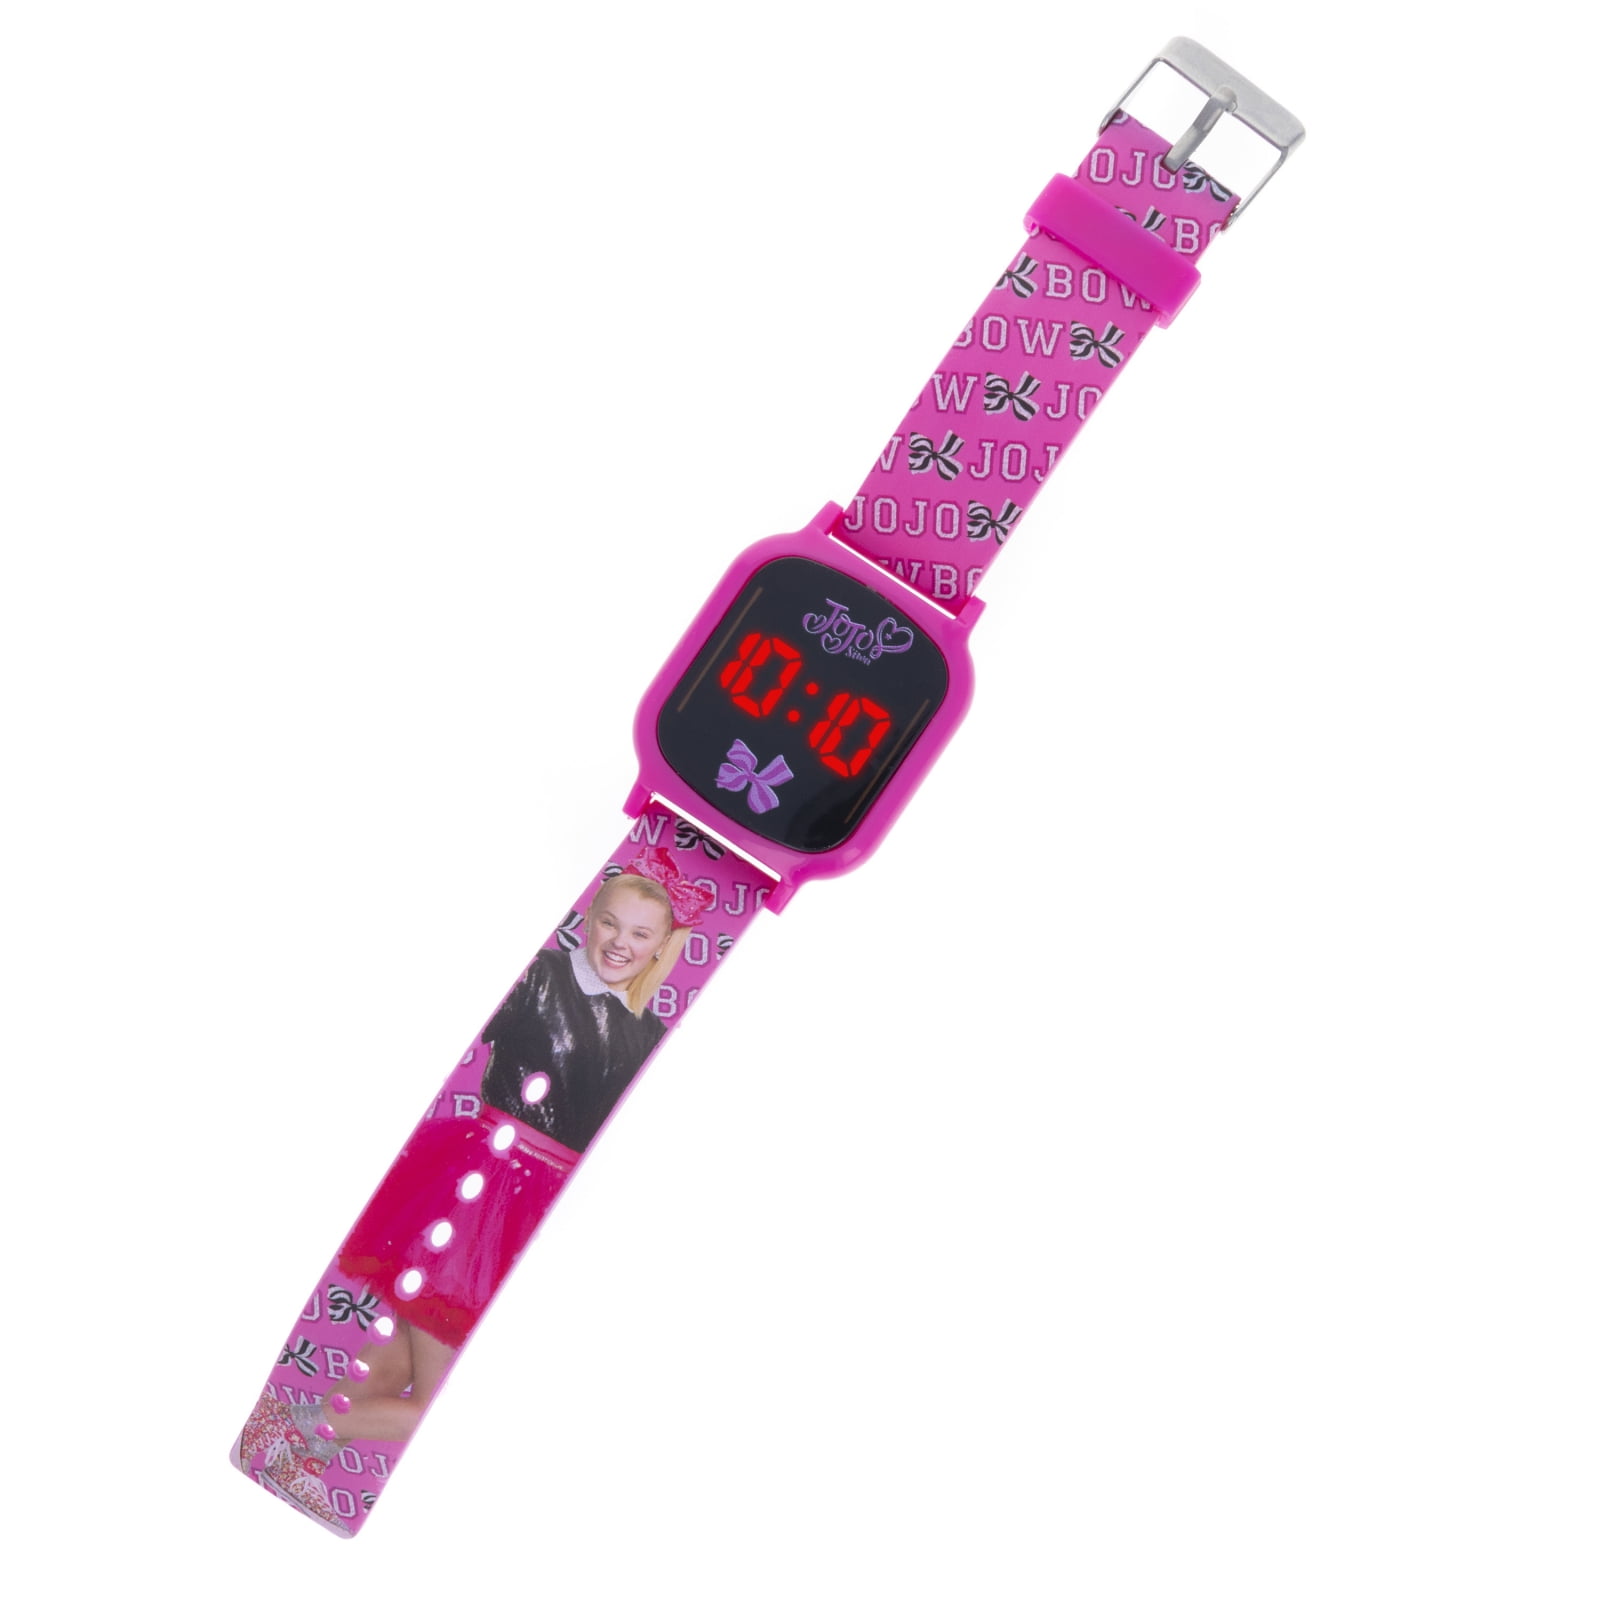  Accutime Disney Lilo & Stitch Blue - Reloj inteligente con  pantalla táctil de aprendizaje educativo para niñas, niños, niños pequeños,  cámara para selfies, juegos de aprendizaje, alarma, calculadora, : Ropa,  Zapatos